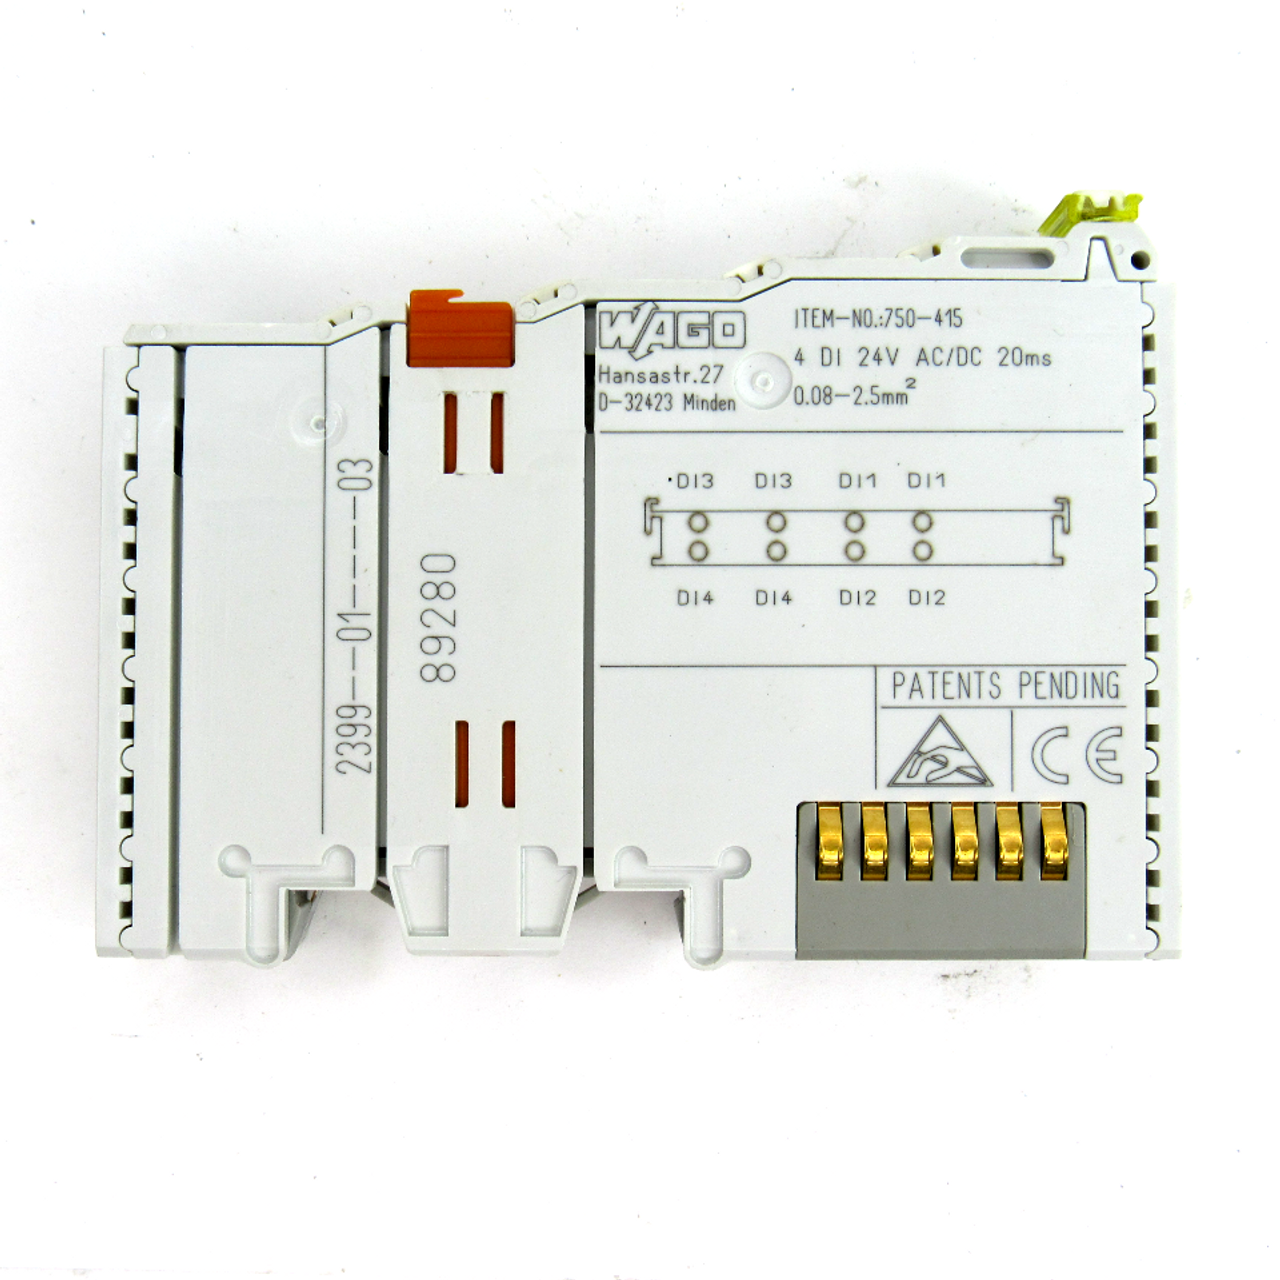 Wago 750-415 Digital Input Module, 24V AC/DC, 20ms